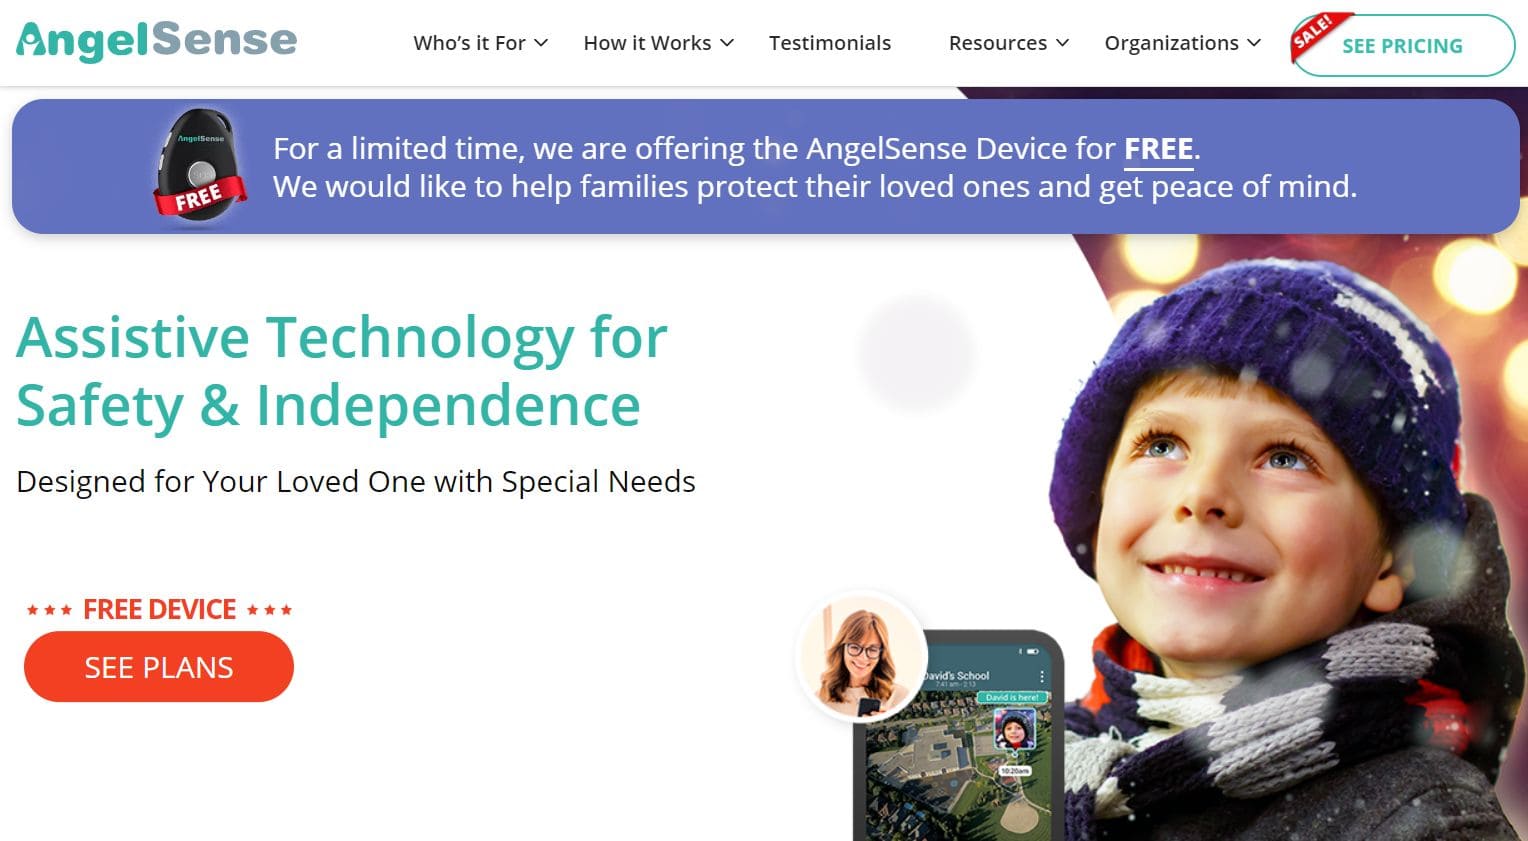 Vue de la page d'accueil du site web pour des informations sur la technologie d'assistance pour les personnes atteintes d'autisme